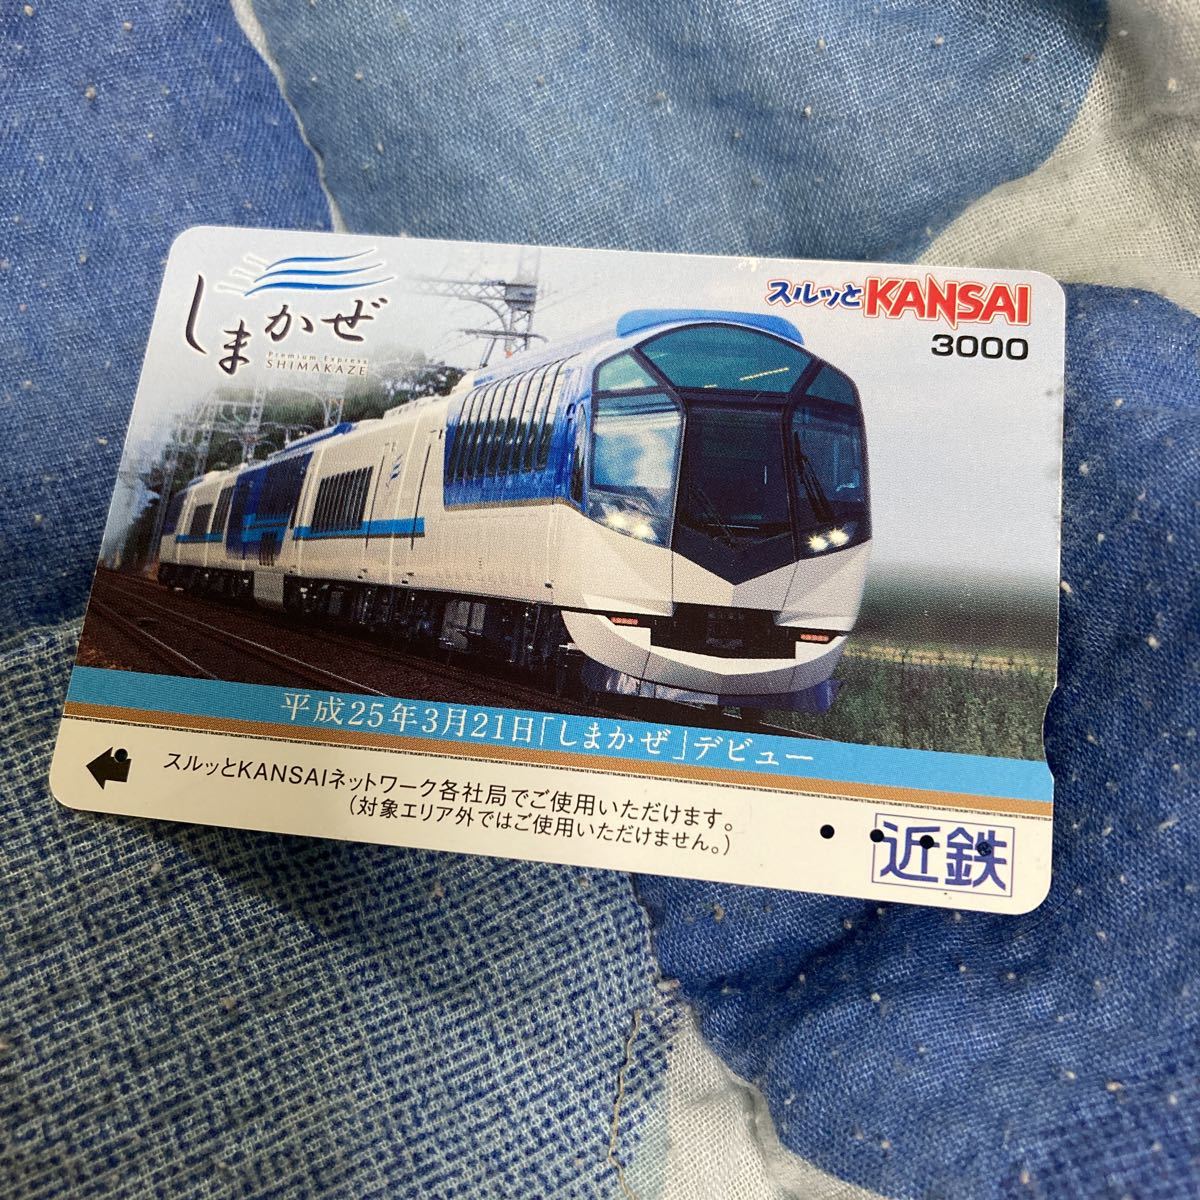  Surutto KANSAI Kinki Япония железная дорога близко металлический .... debut память использованный .